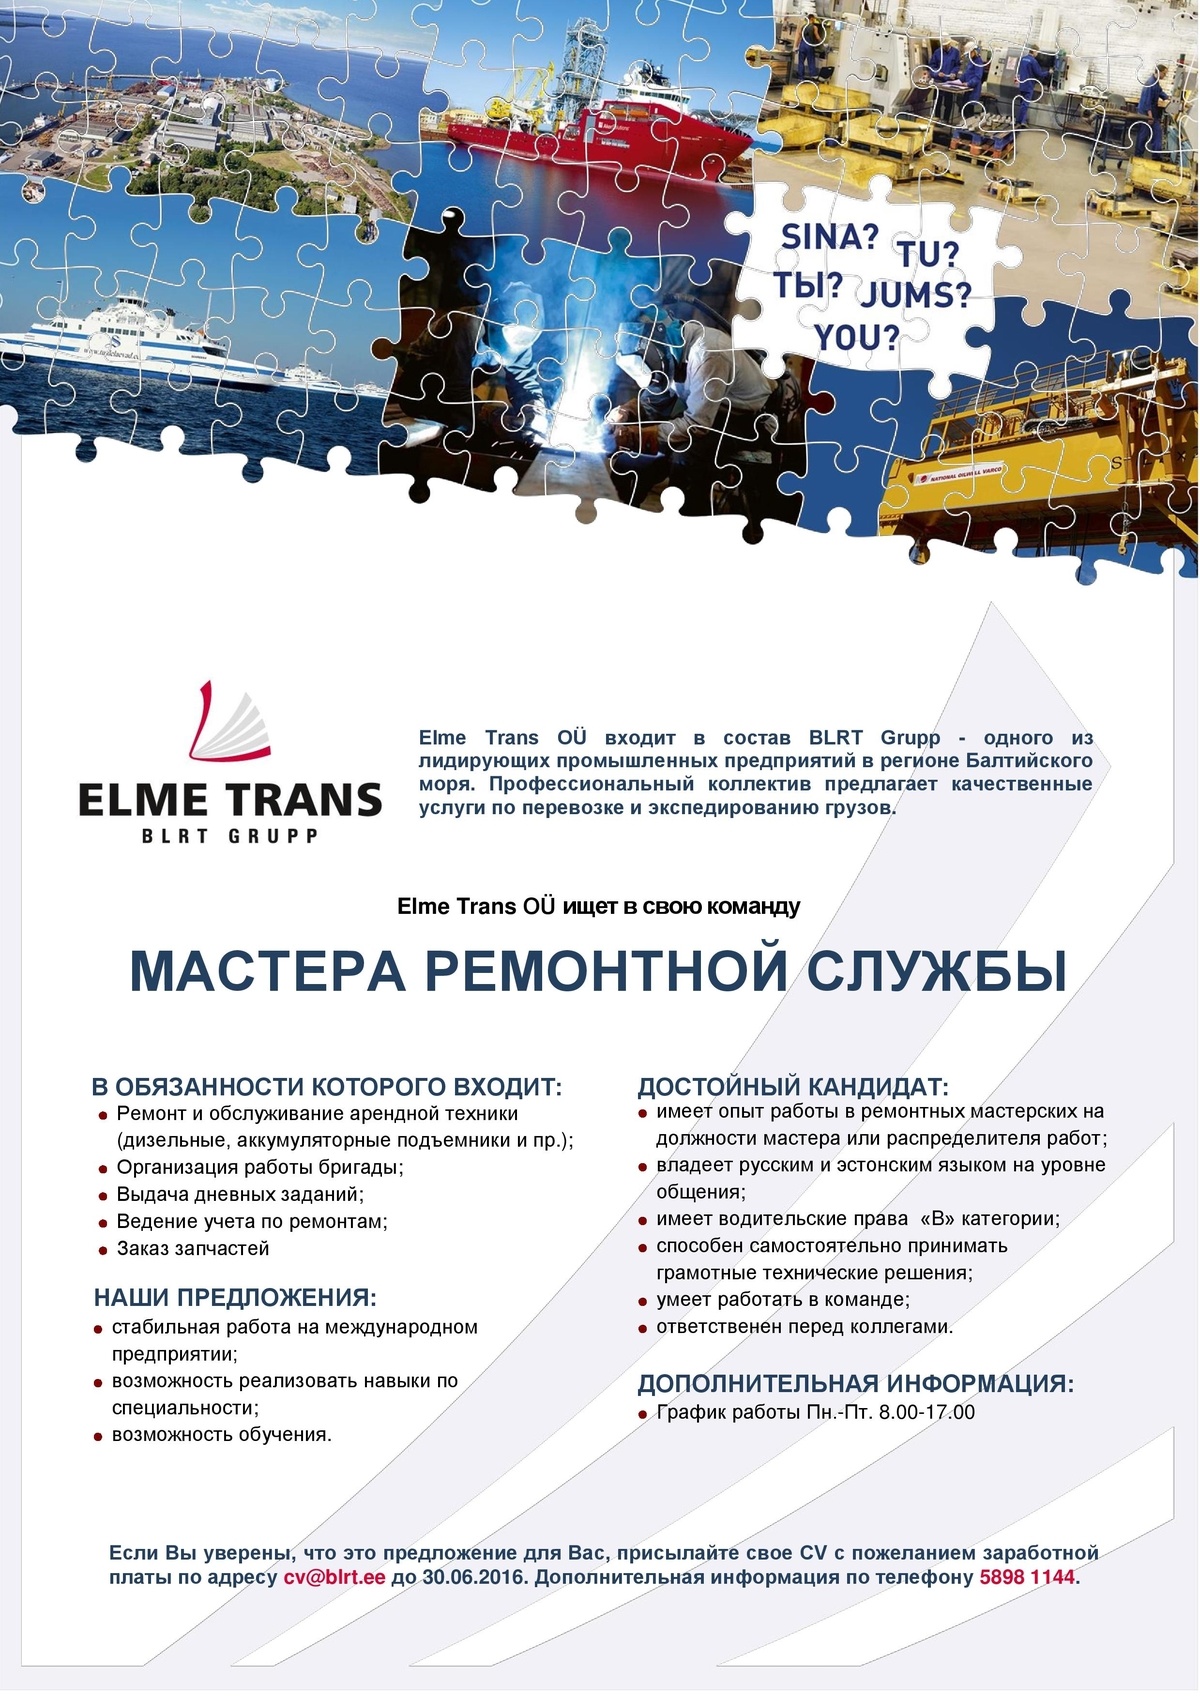 Elme Trans OÜ Мастер ремонтной службы